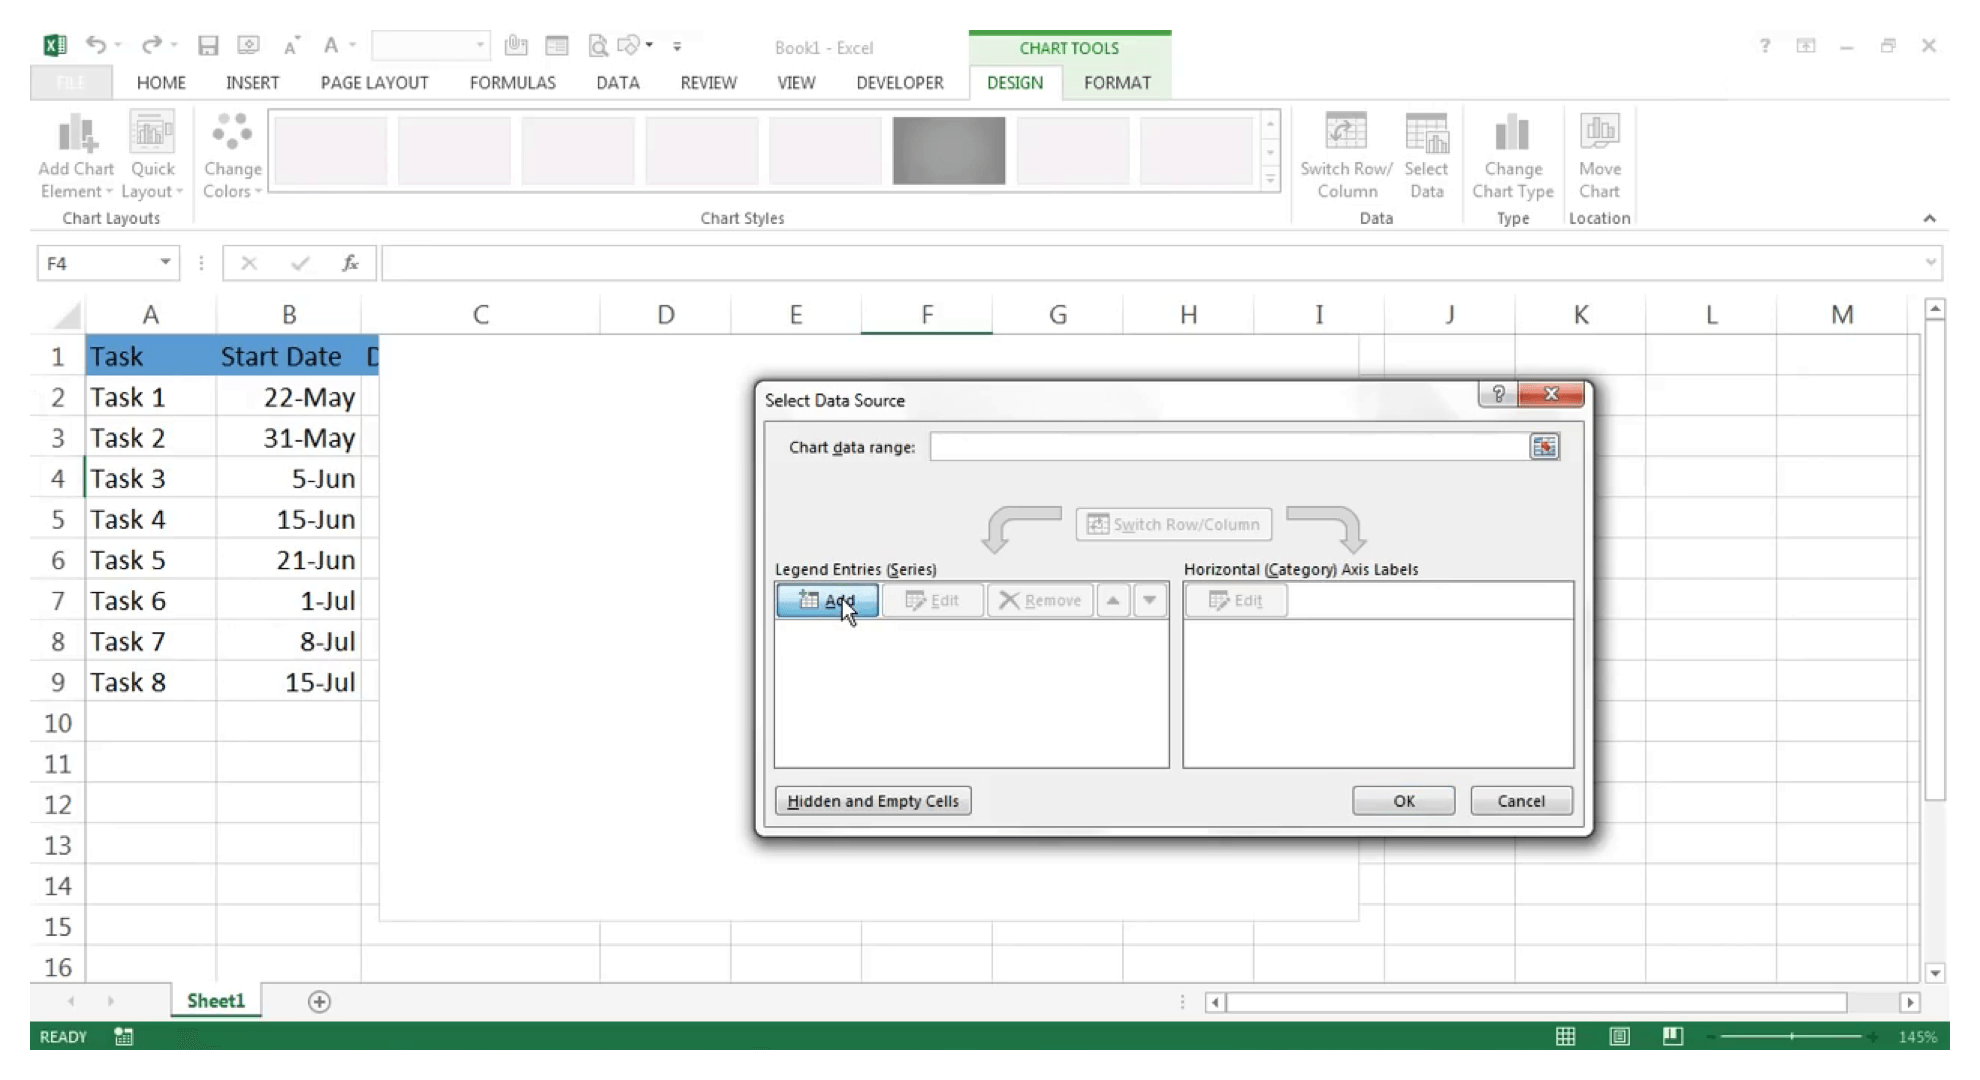 Excelでガントチャートを作成する方法